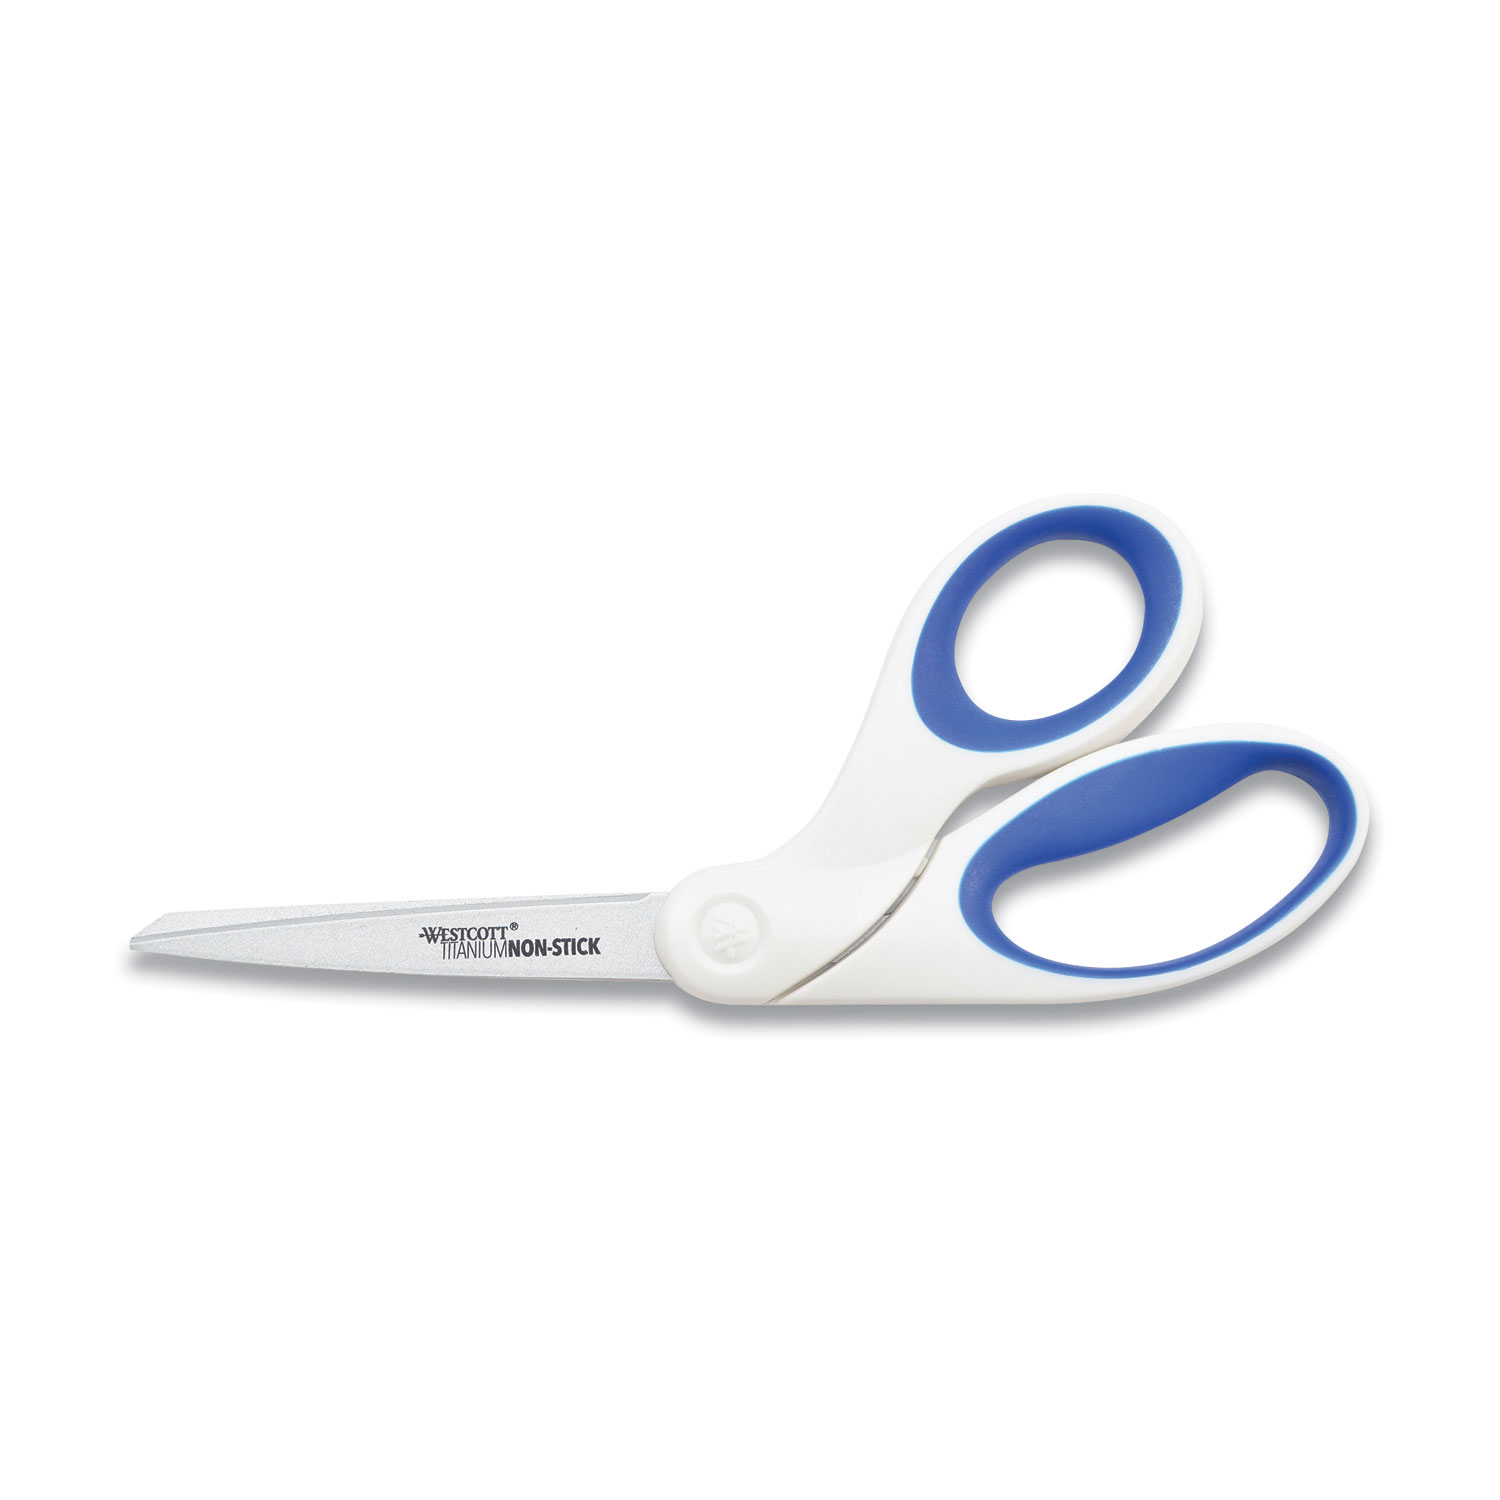  Westcott ACM-16578 Non-Stick Titanium Bonded Scissors, 8 Long, 3.25 Cut Length, White/Blue Bent Handle (ACM2397202) 